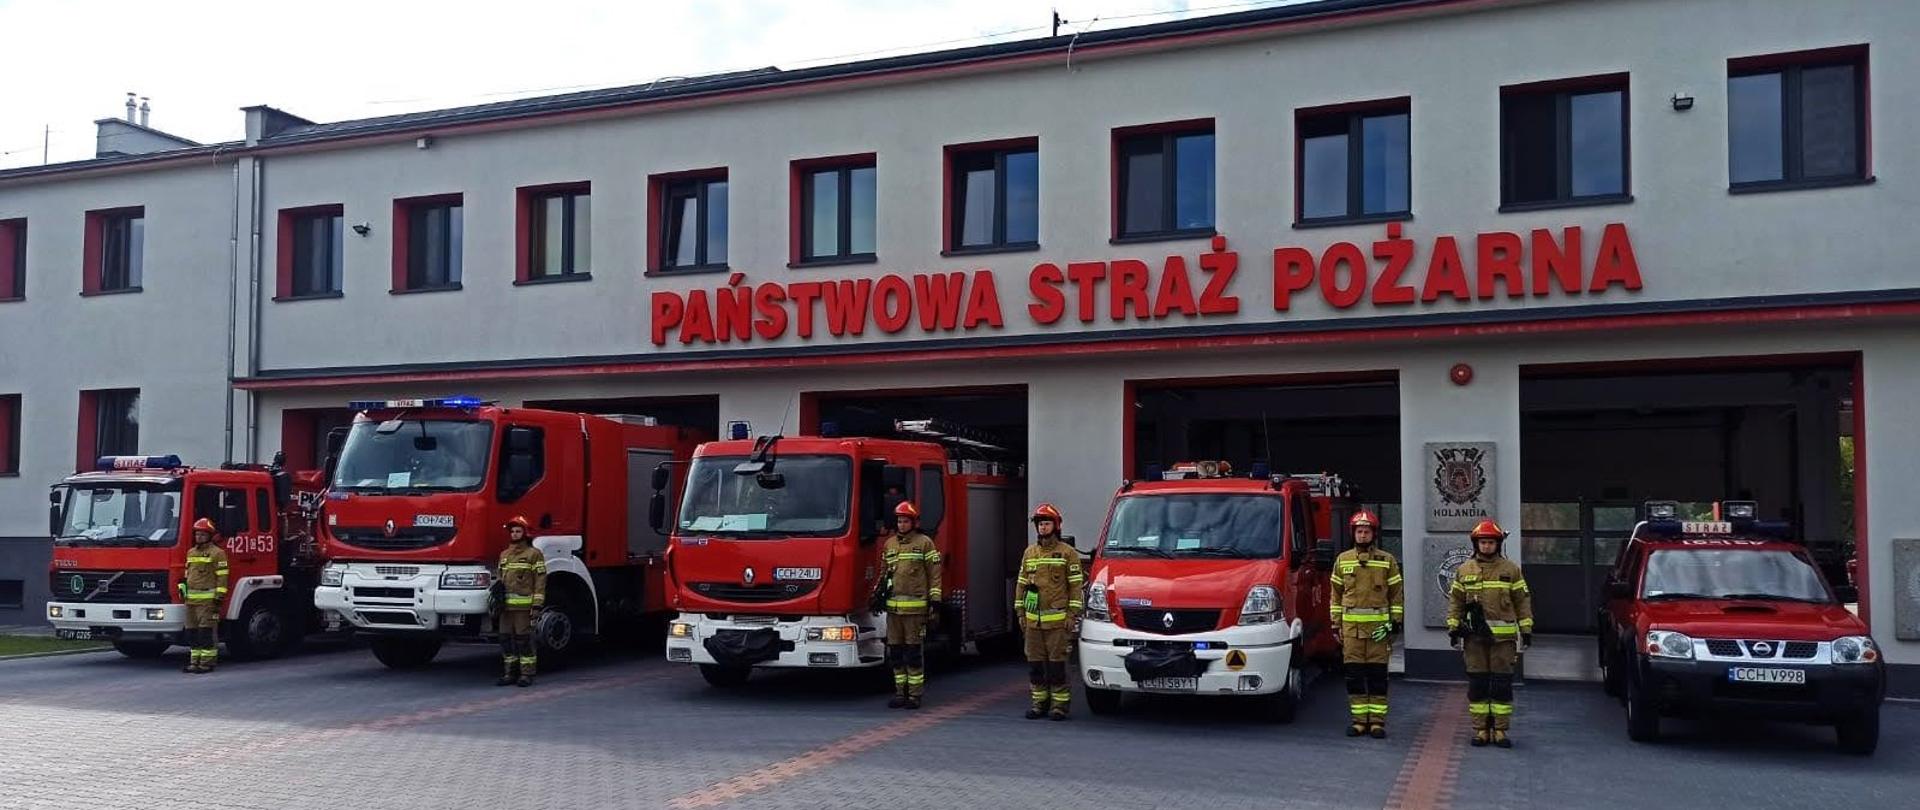 Na zdjęciu przed budynkiem Komendy Powiatowej Państwowej Straży Pożarnej znajdują się pojazdy oraz strażacy oddający hołd w 78 rocznicę wybuchu Powstania Warszawskiego 